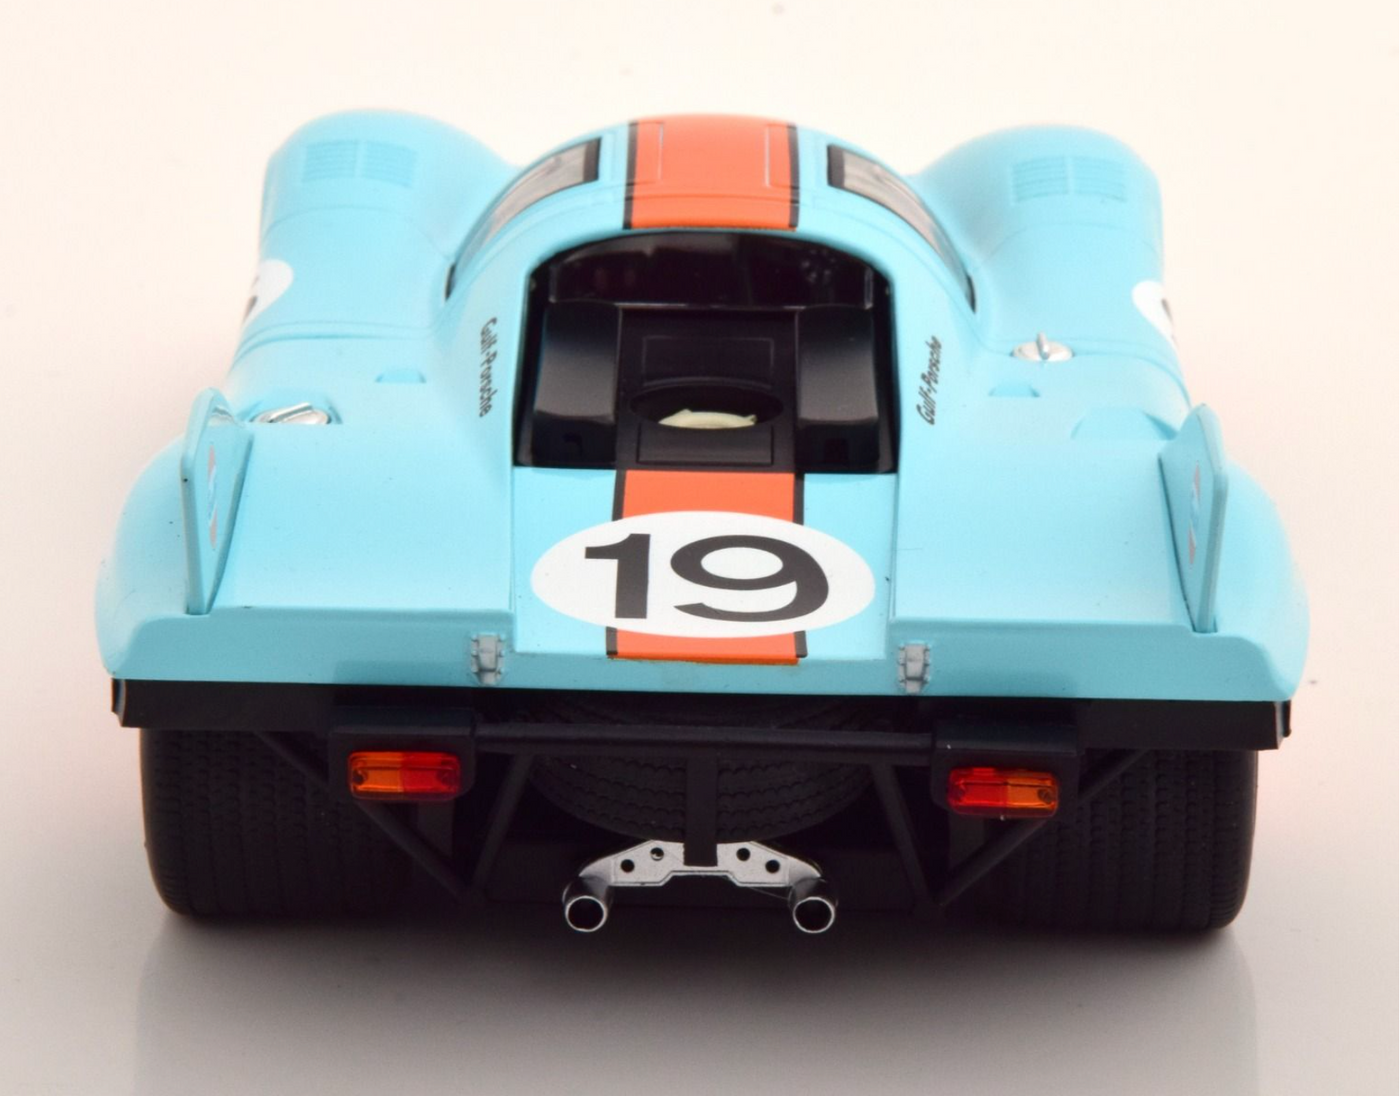 Modellino Porsche 917 colori Gulf 24h di Le Mans